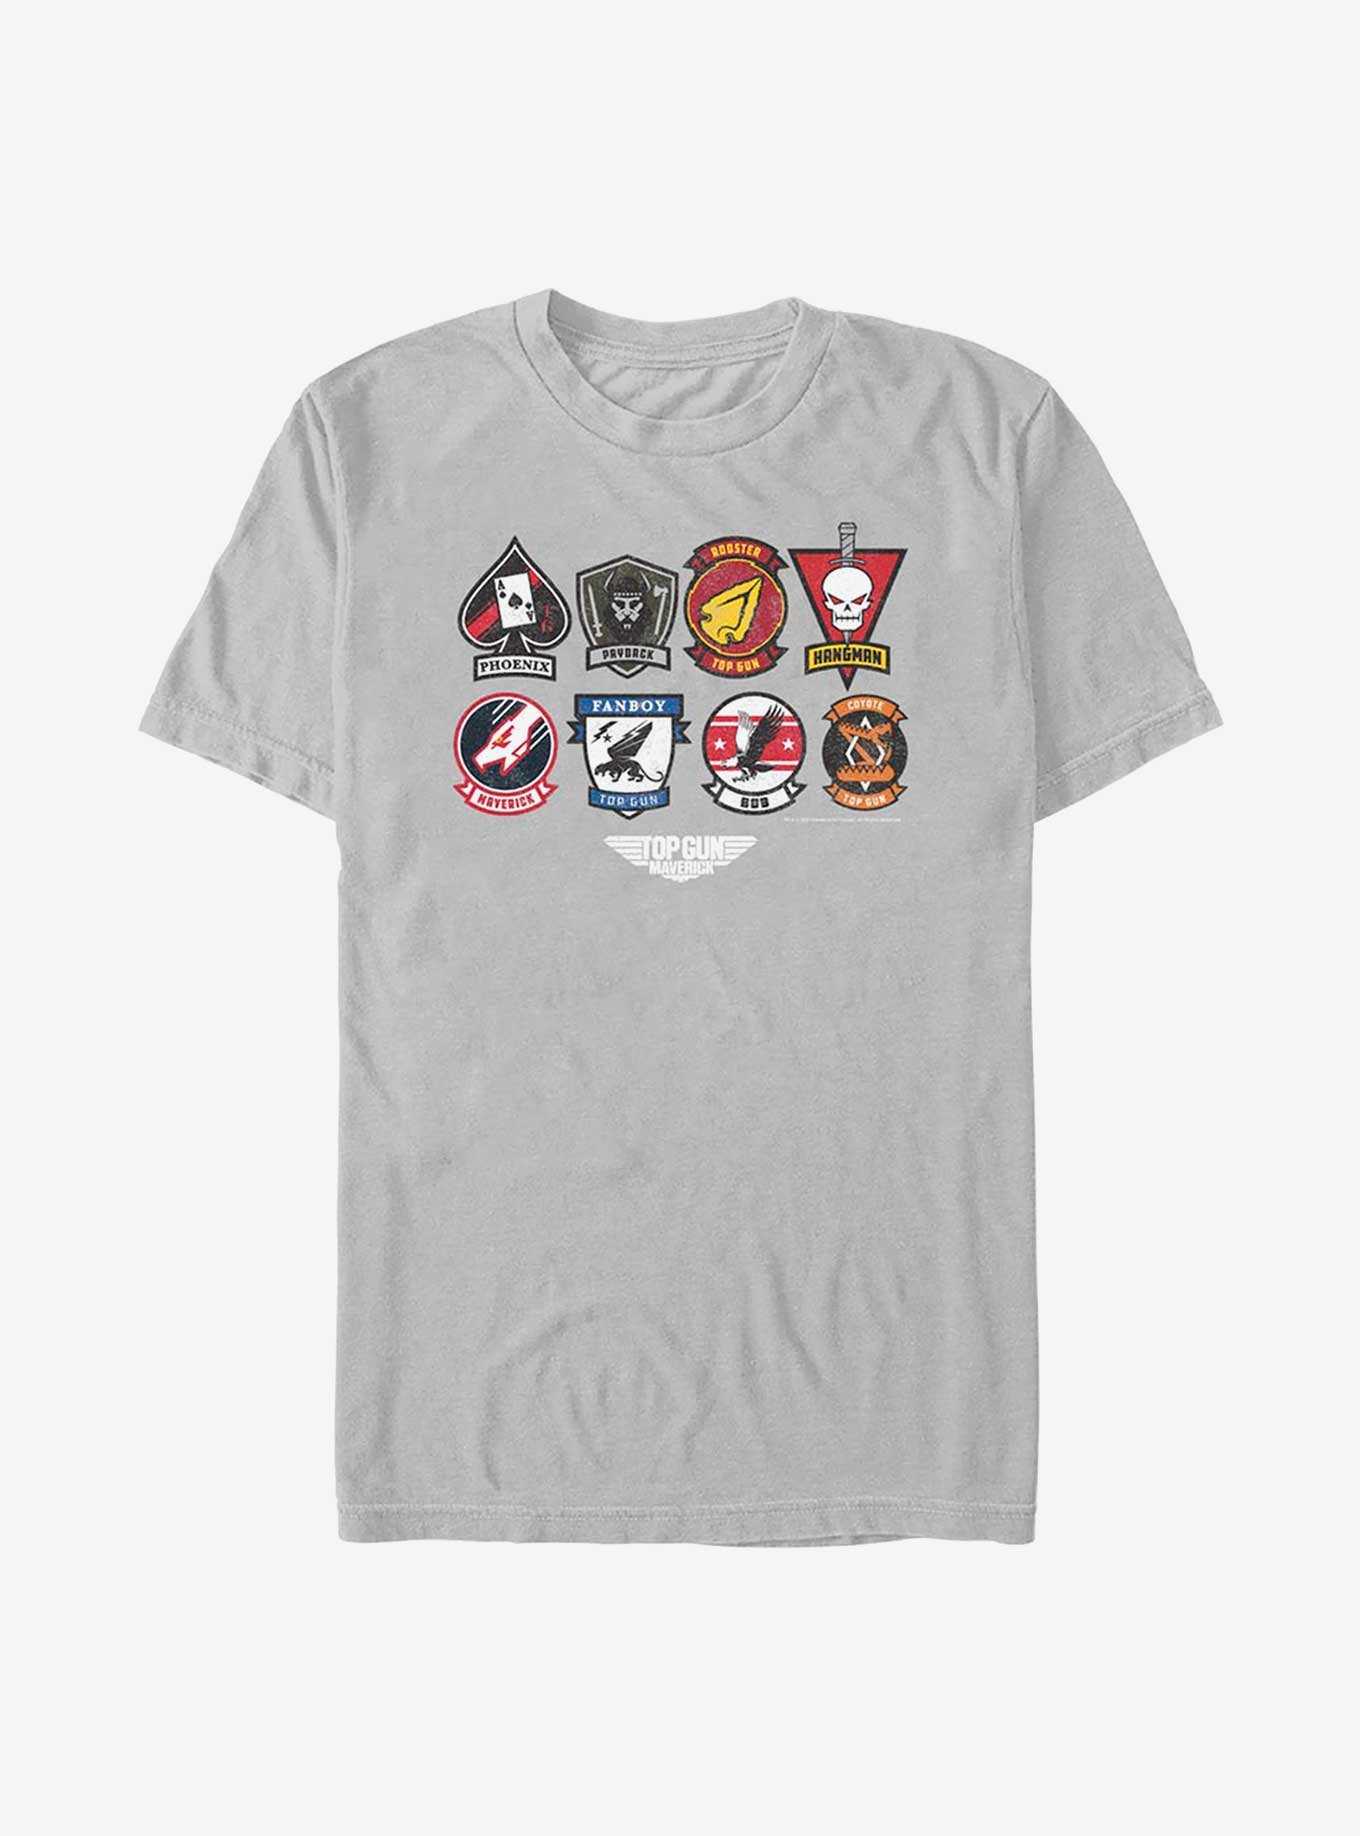 Top Gun: Maverick Badge Layout T-Shirt, , hi-res